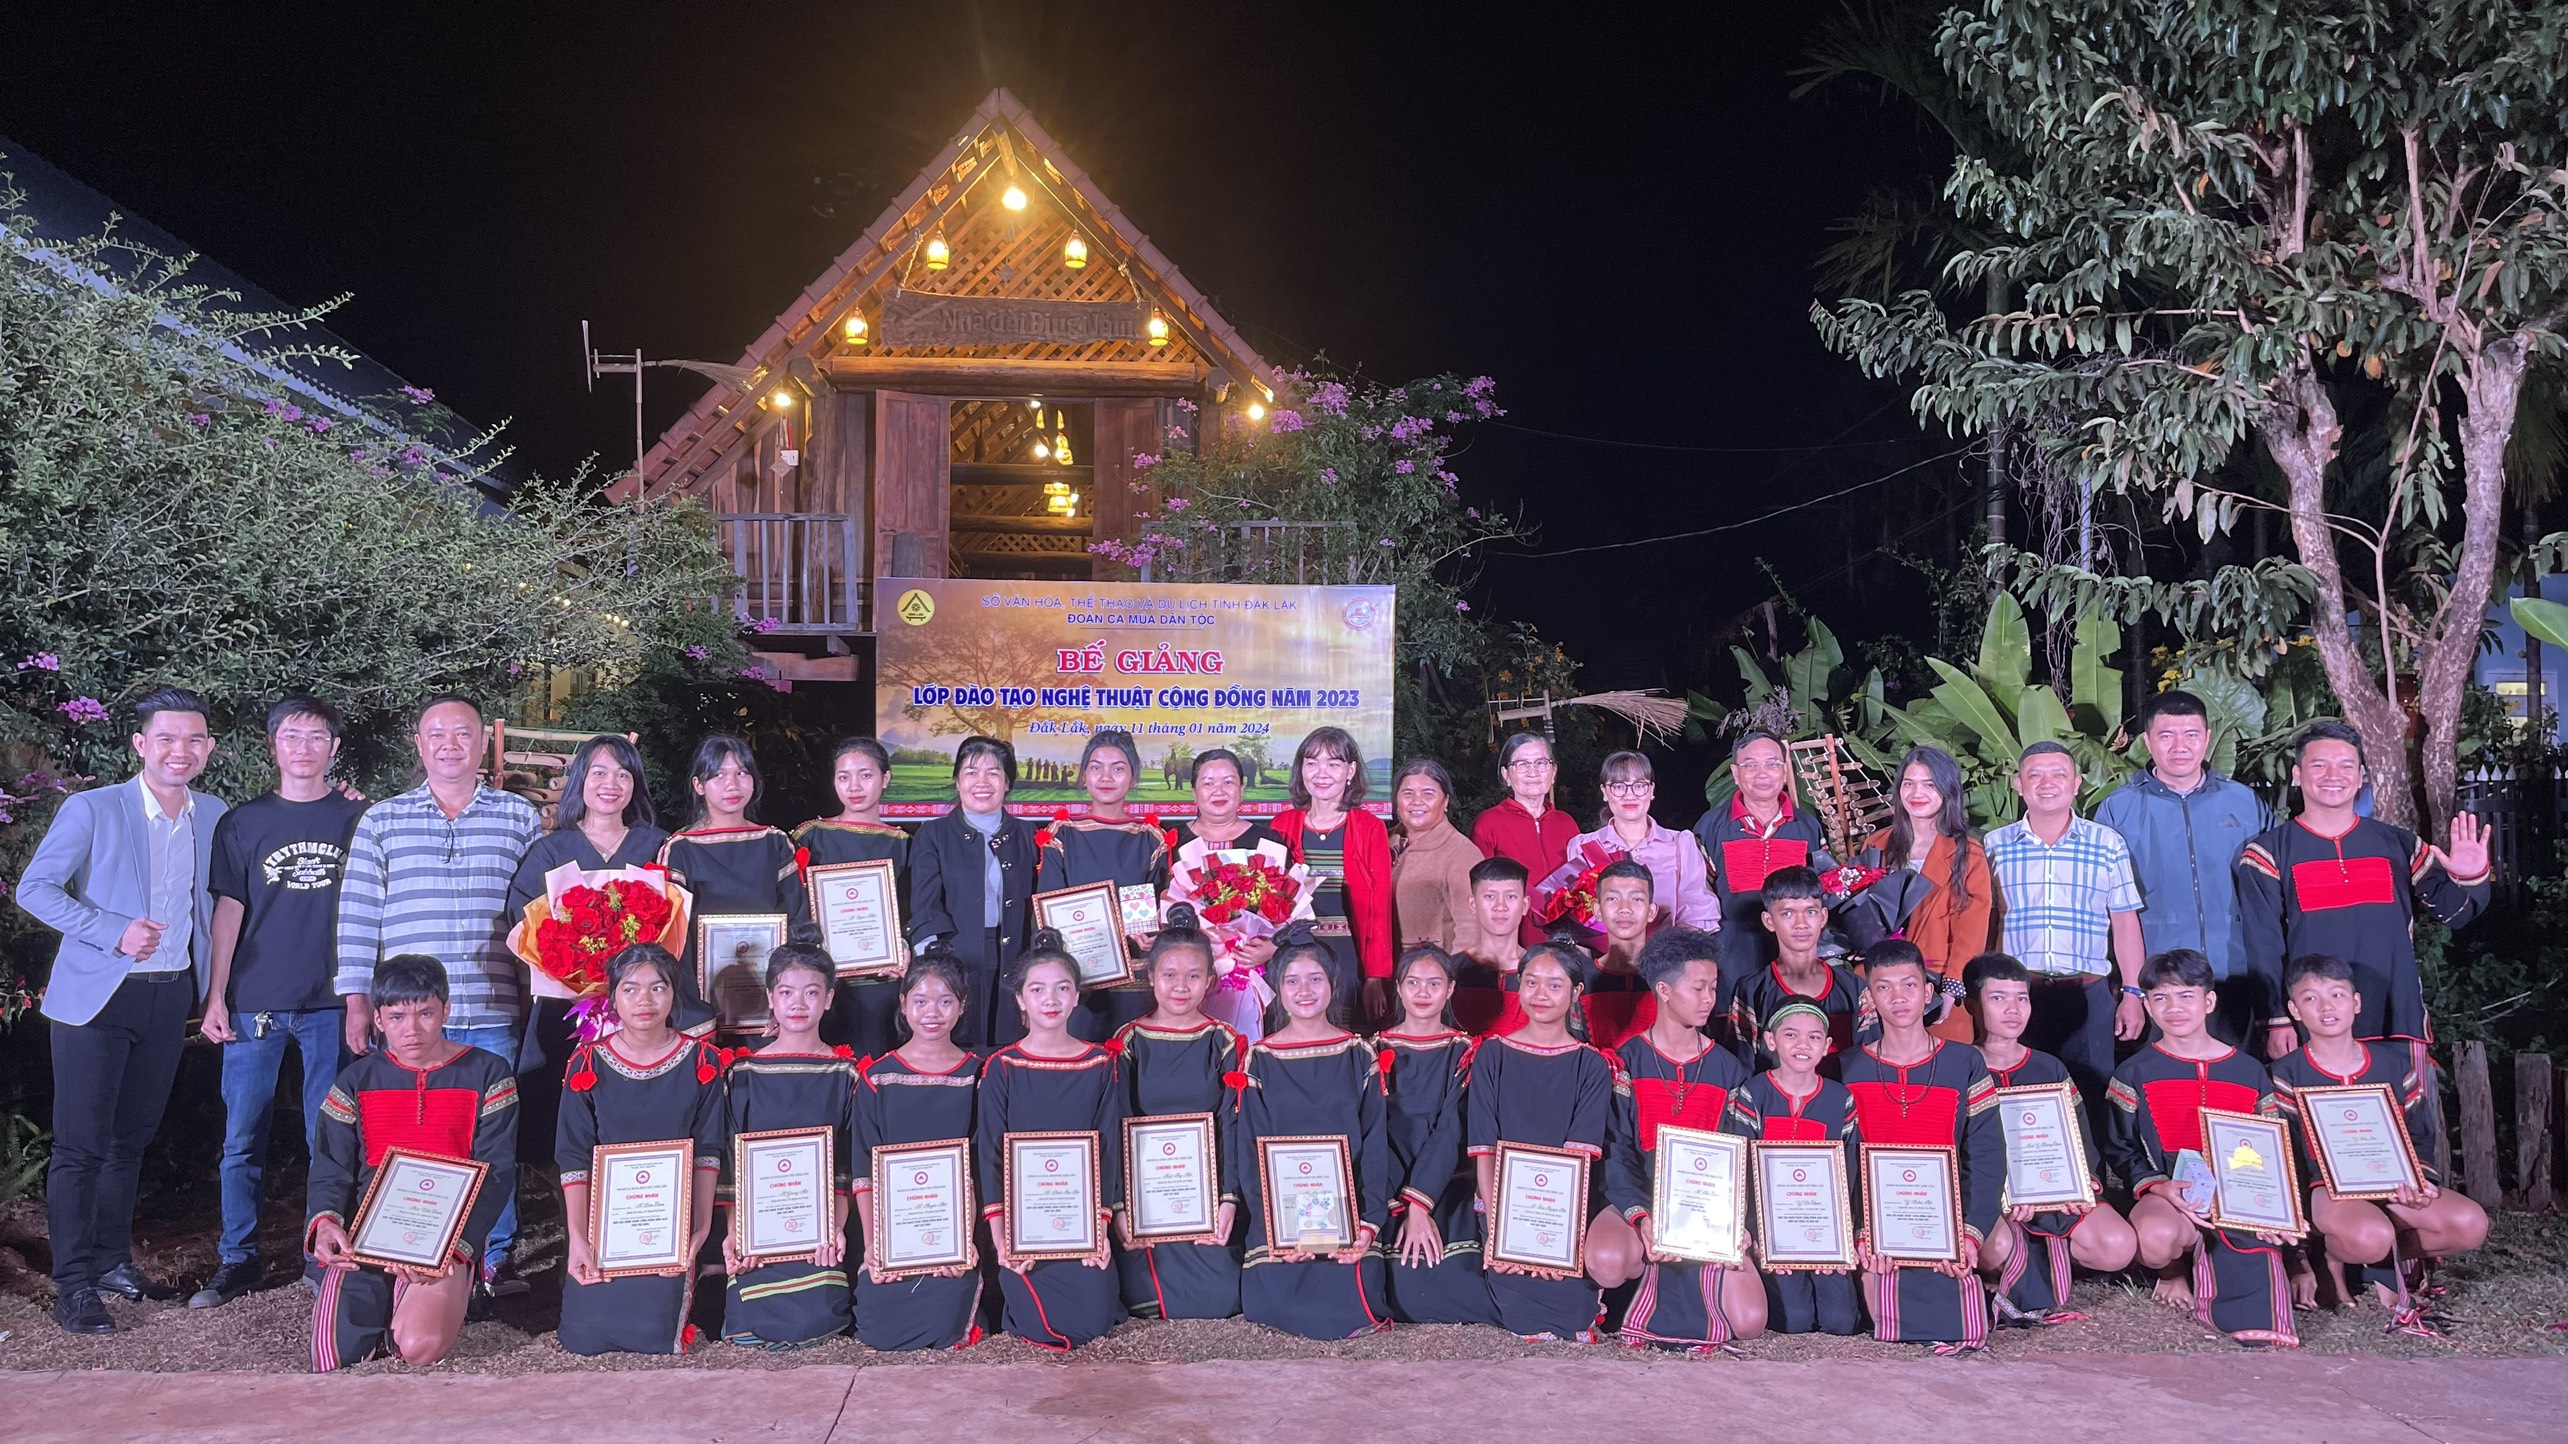 Đoàn Ca múa dân tộc Đắk Lắk bế mạc lớp đào tạo nghệ thuật cộng đồng